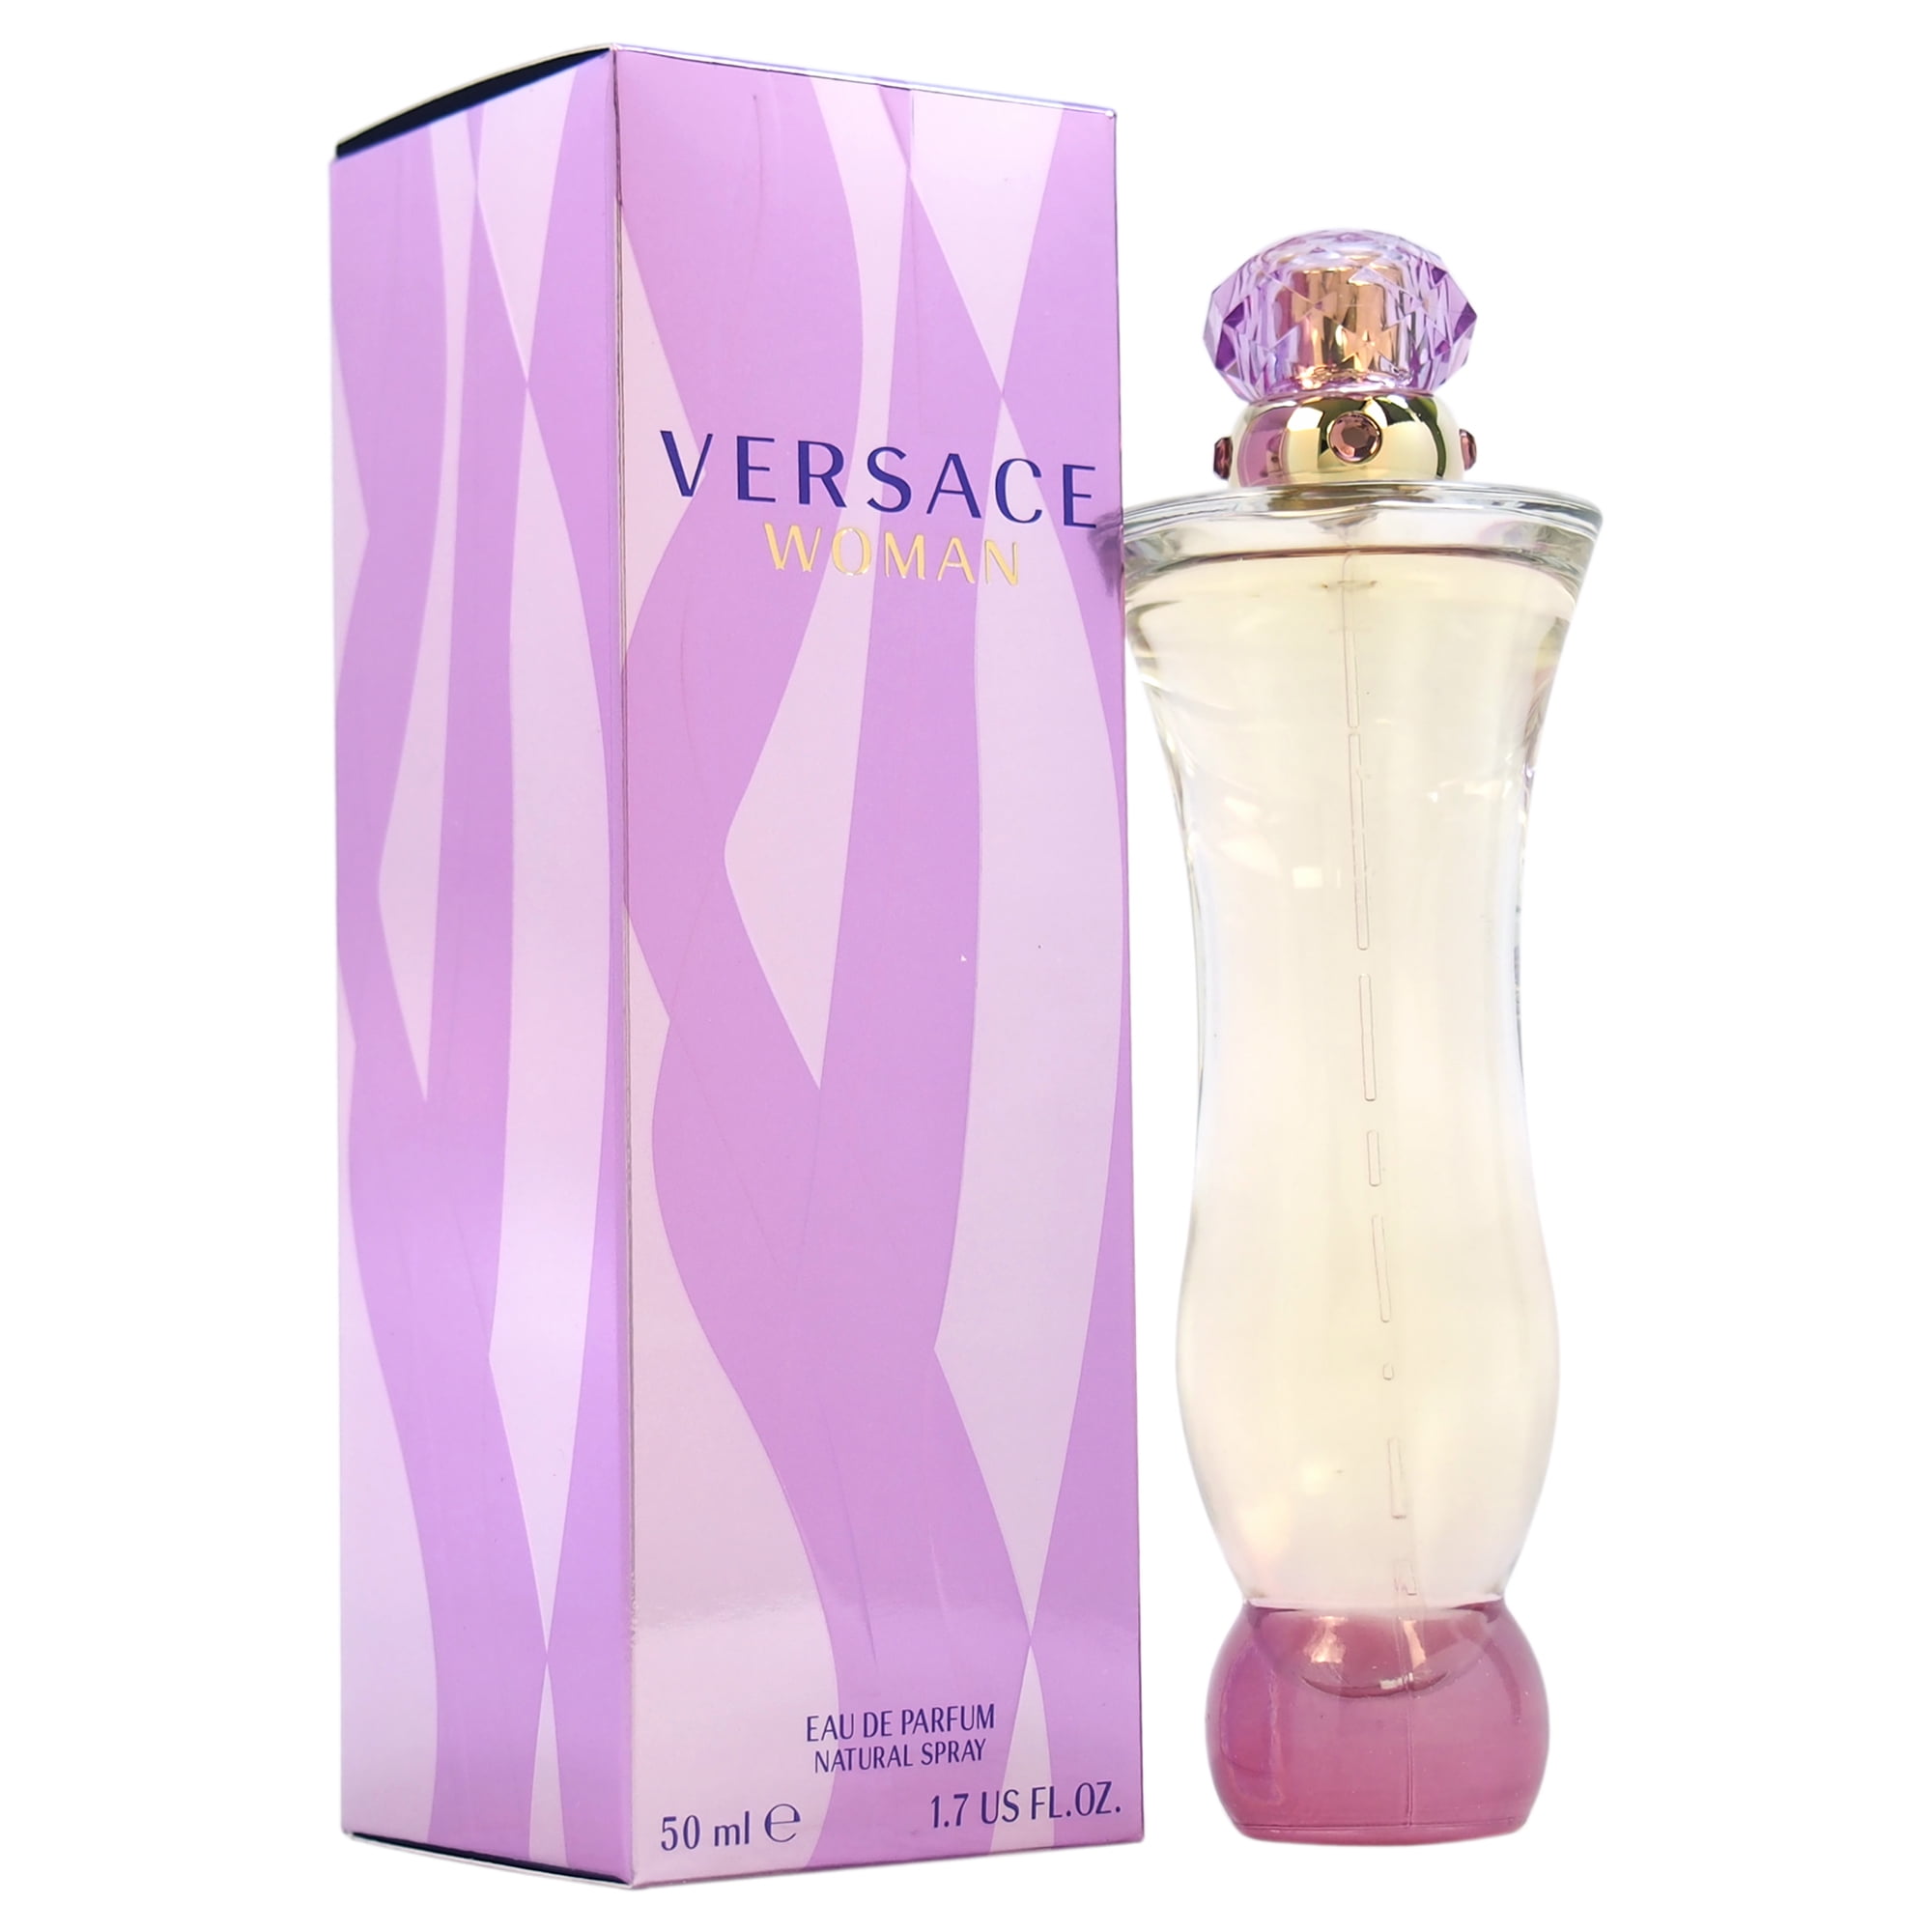 fungere gå på indkøb Uenighed Versace Woman Eau De Parfum, Perfume for Women, 1.7 Oz - Walmart.com